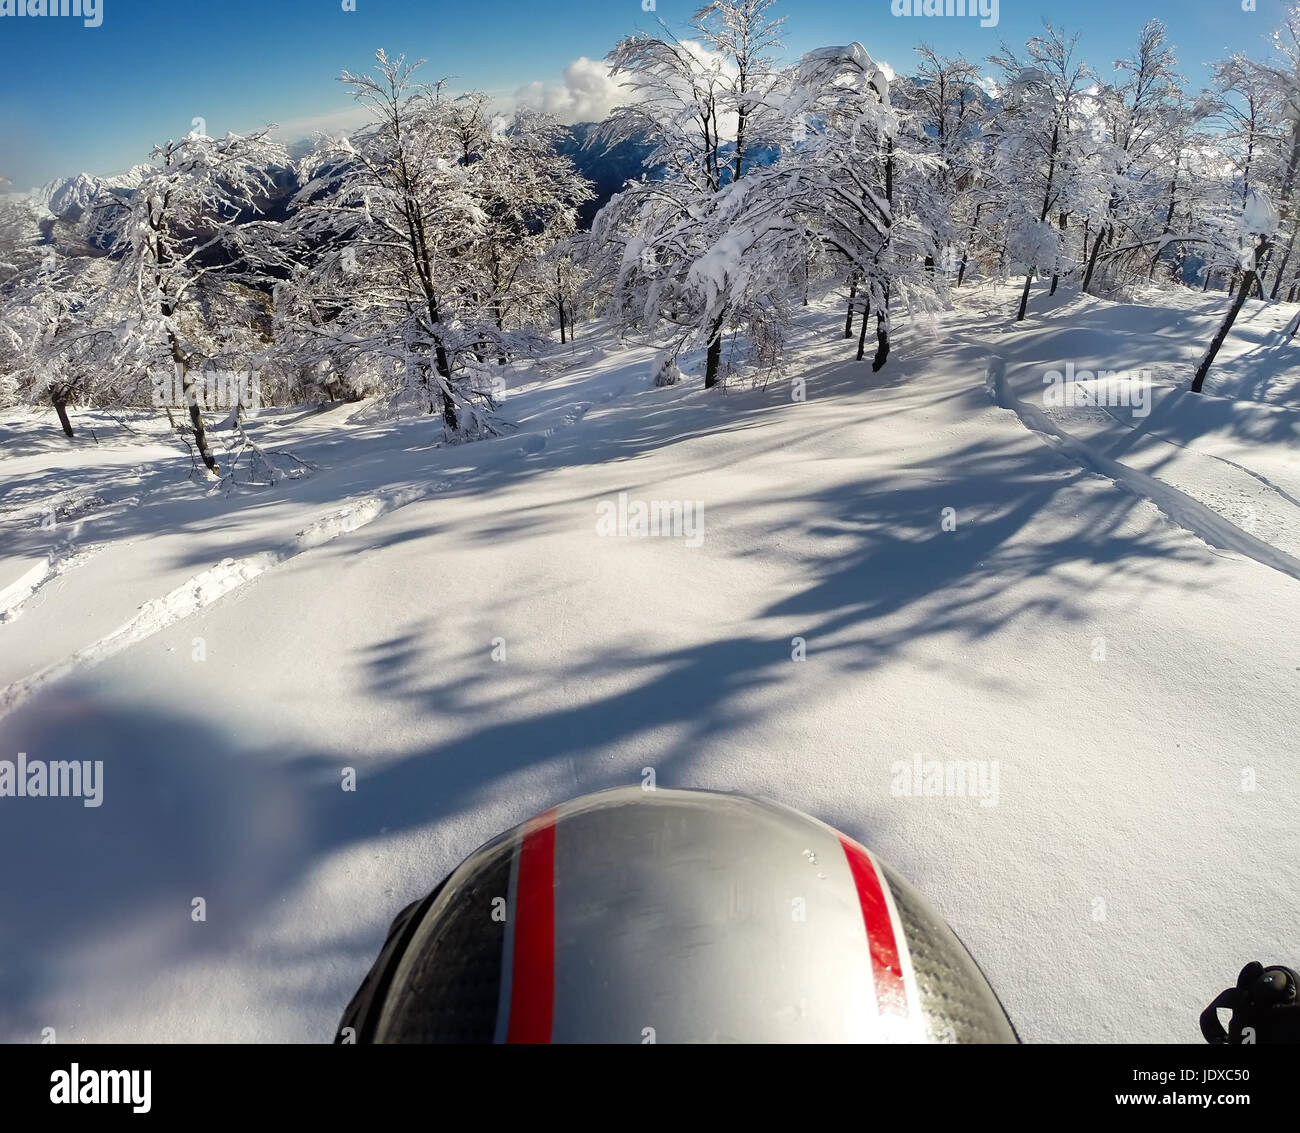 Ski dans la neige fraîche. À l'aide de POV action cam sur le casque. Bielmonte, Italie, Europe. Banque D'Images